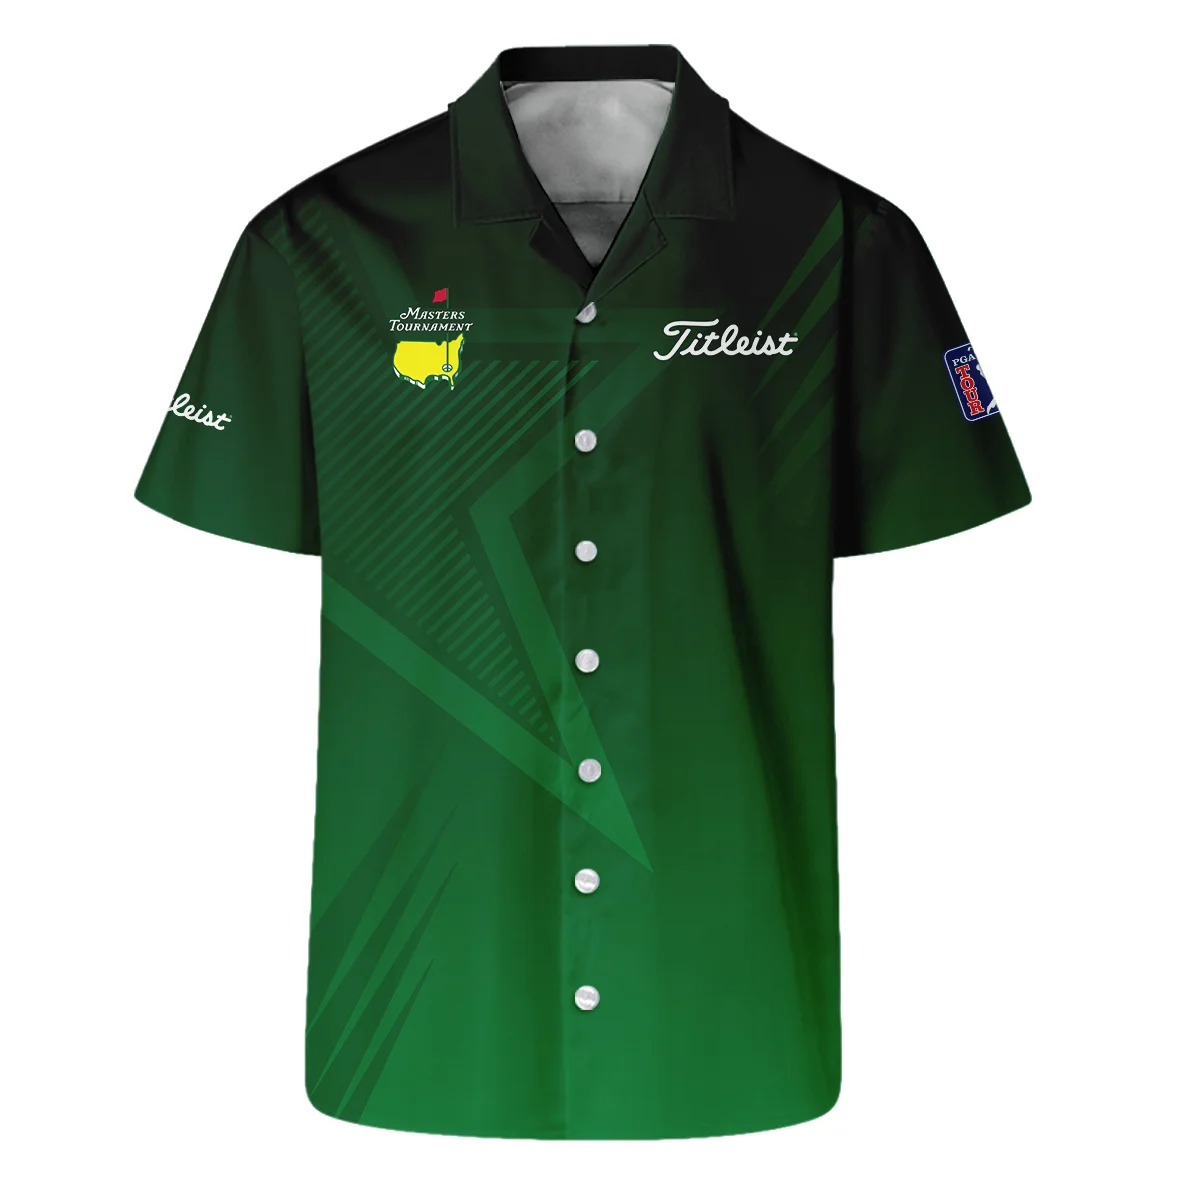 Titleist Masters Tournament Zipper Hoodie Shirt Dark Green Gradient Star Pattern Golf Sports Zipper Hoodie Shirt